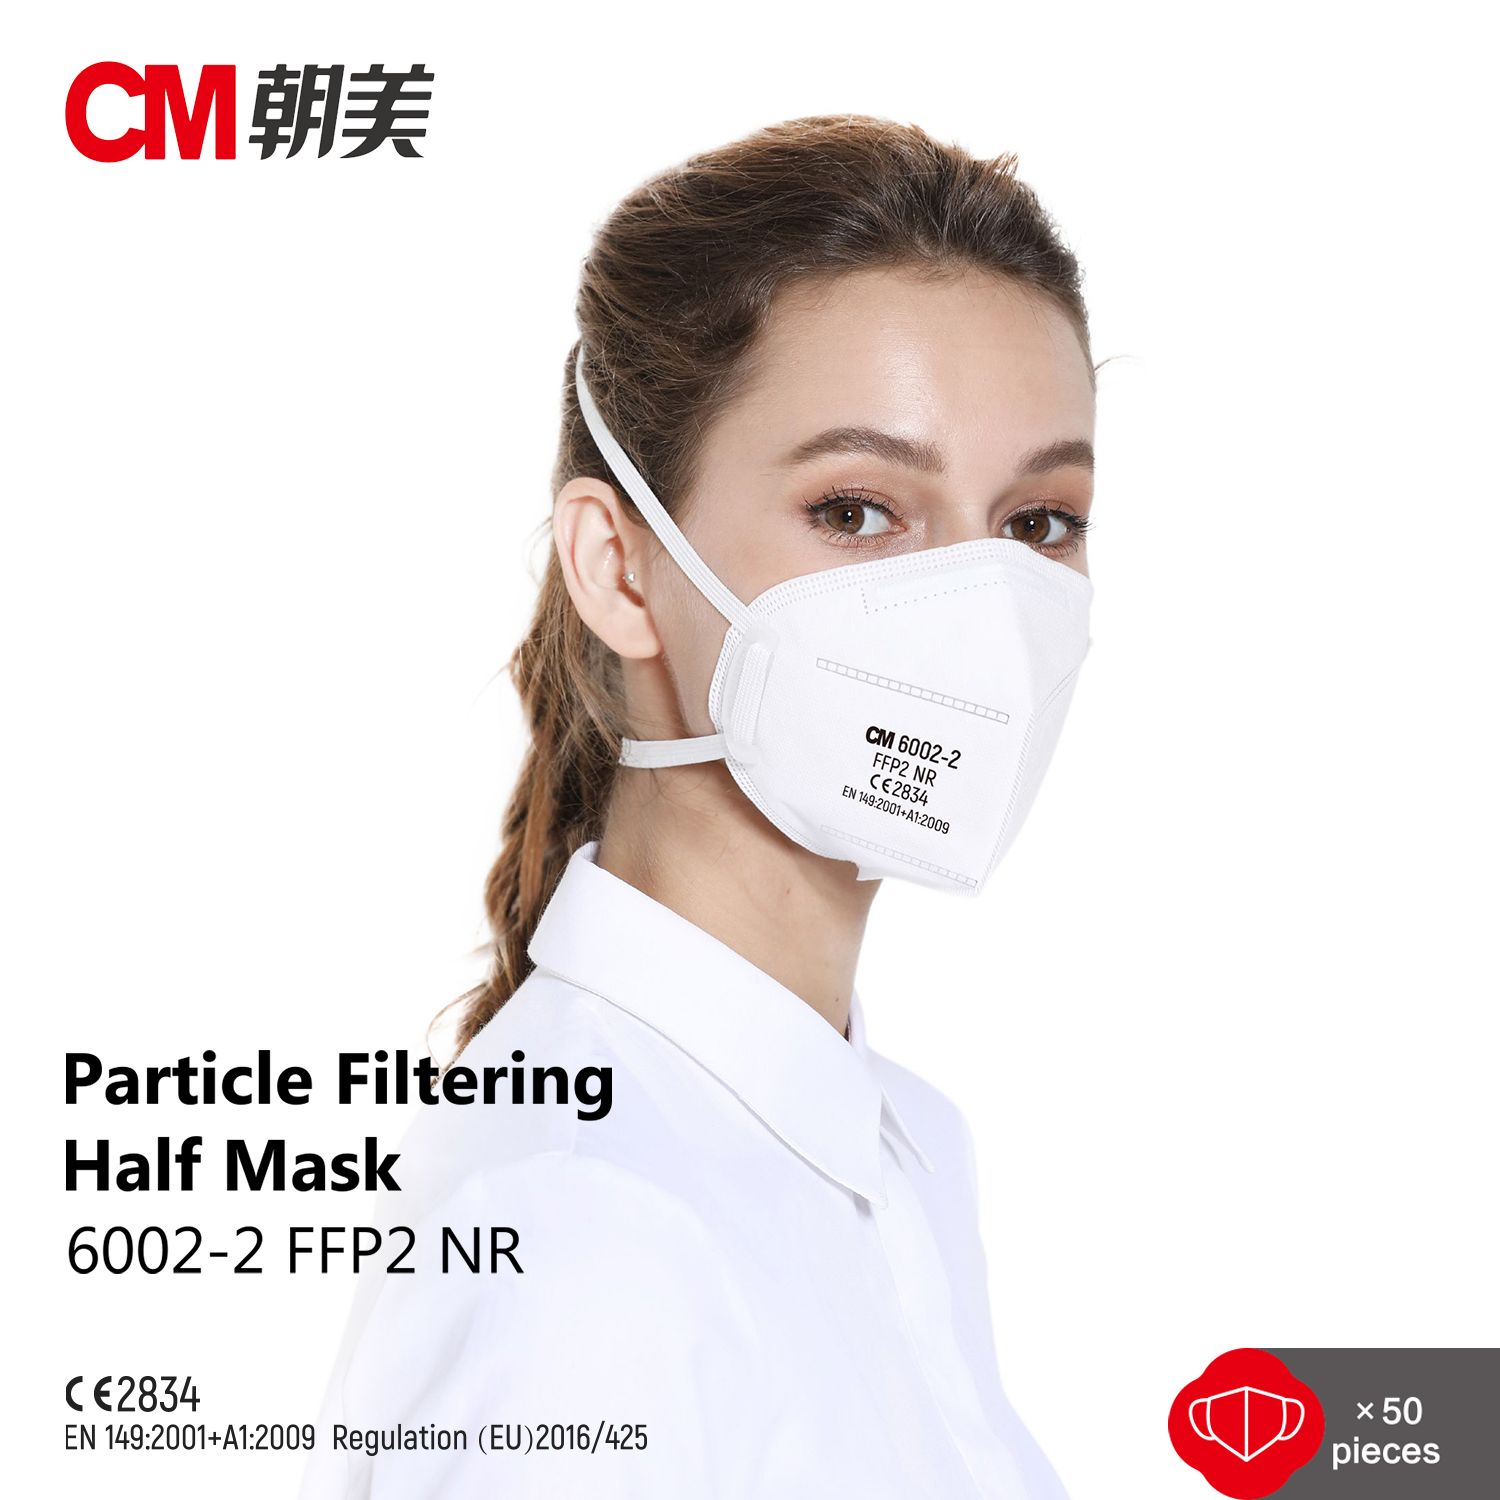 6002-2 CM Maski osakesi filtreeriv poolmask CE FFP2 ühekordselt kasutatava tolmumaskiga, esiletoodud pilt